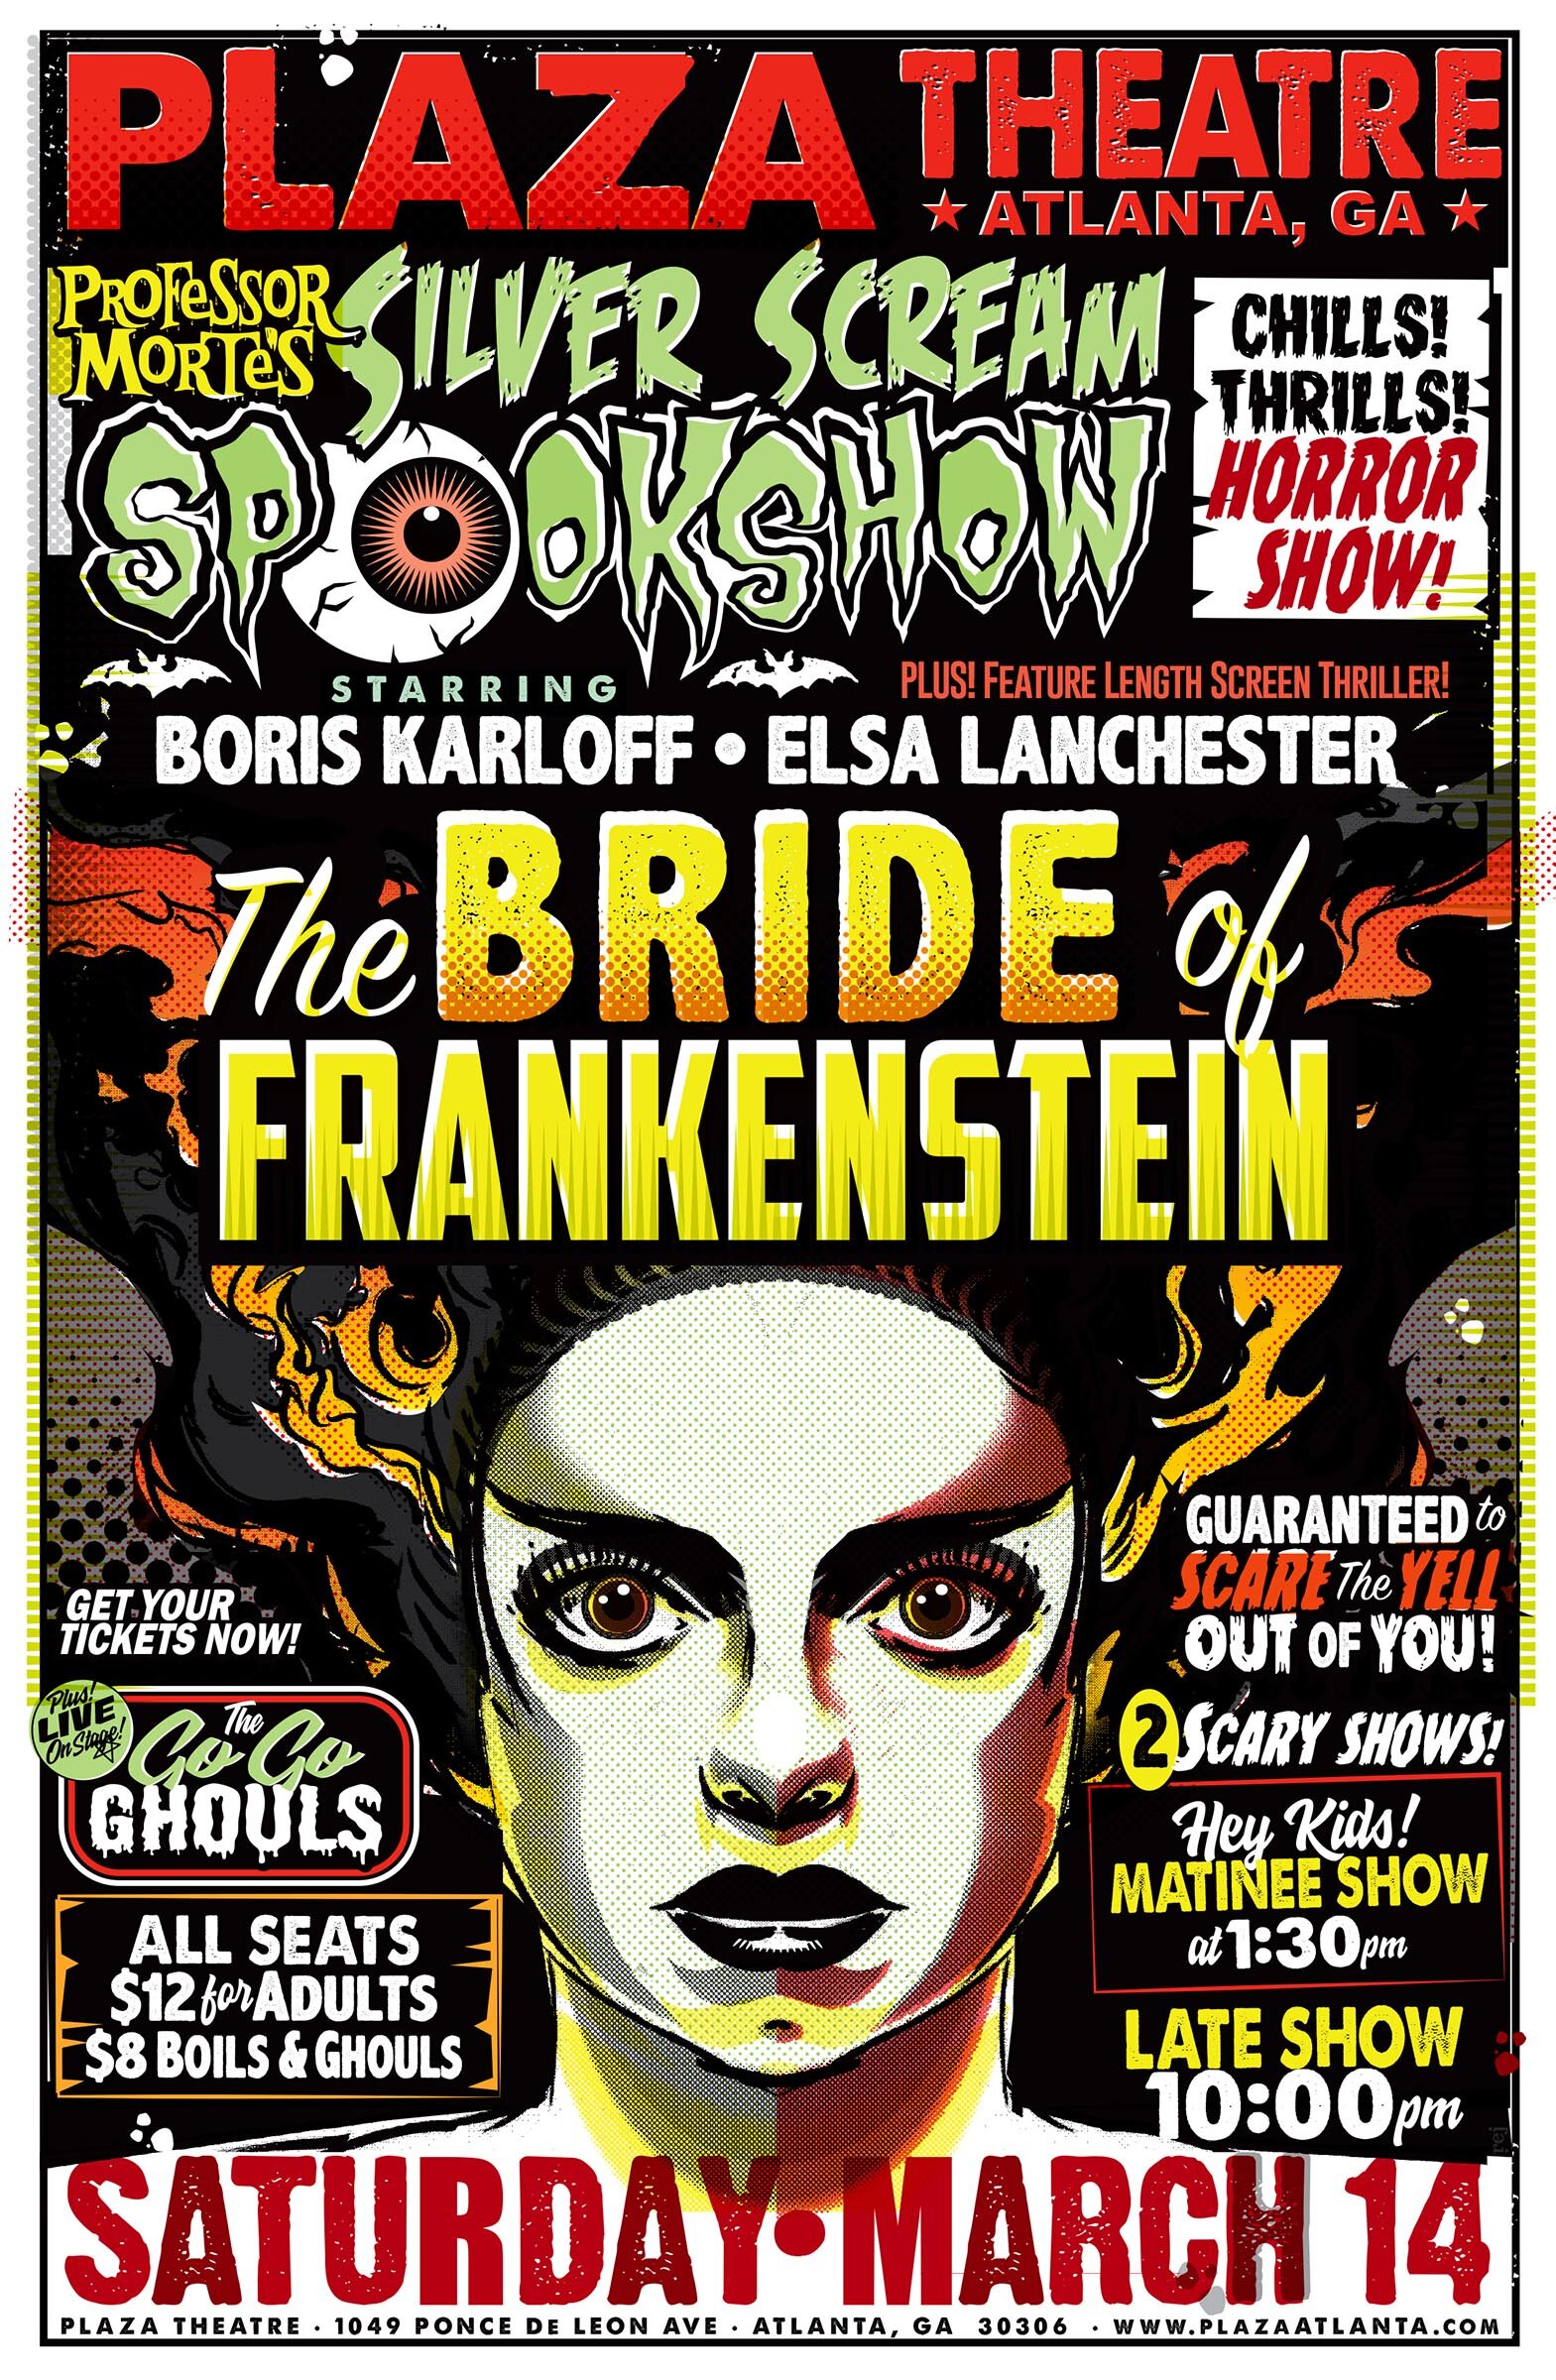 Bride of Frankenstein Silk Fabric Movie Poster 24"x32"